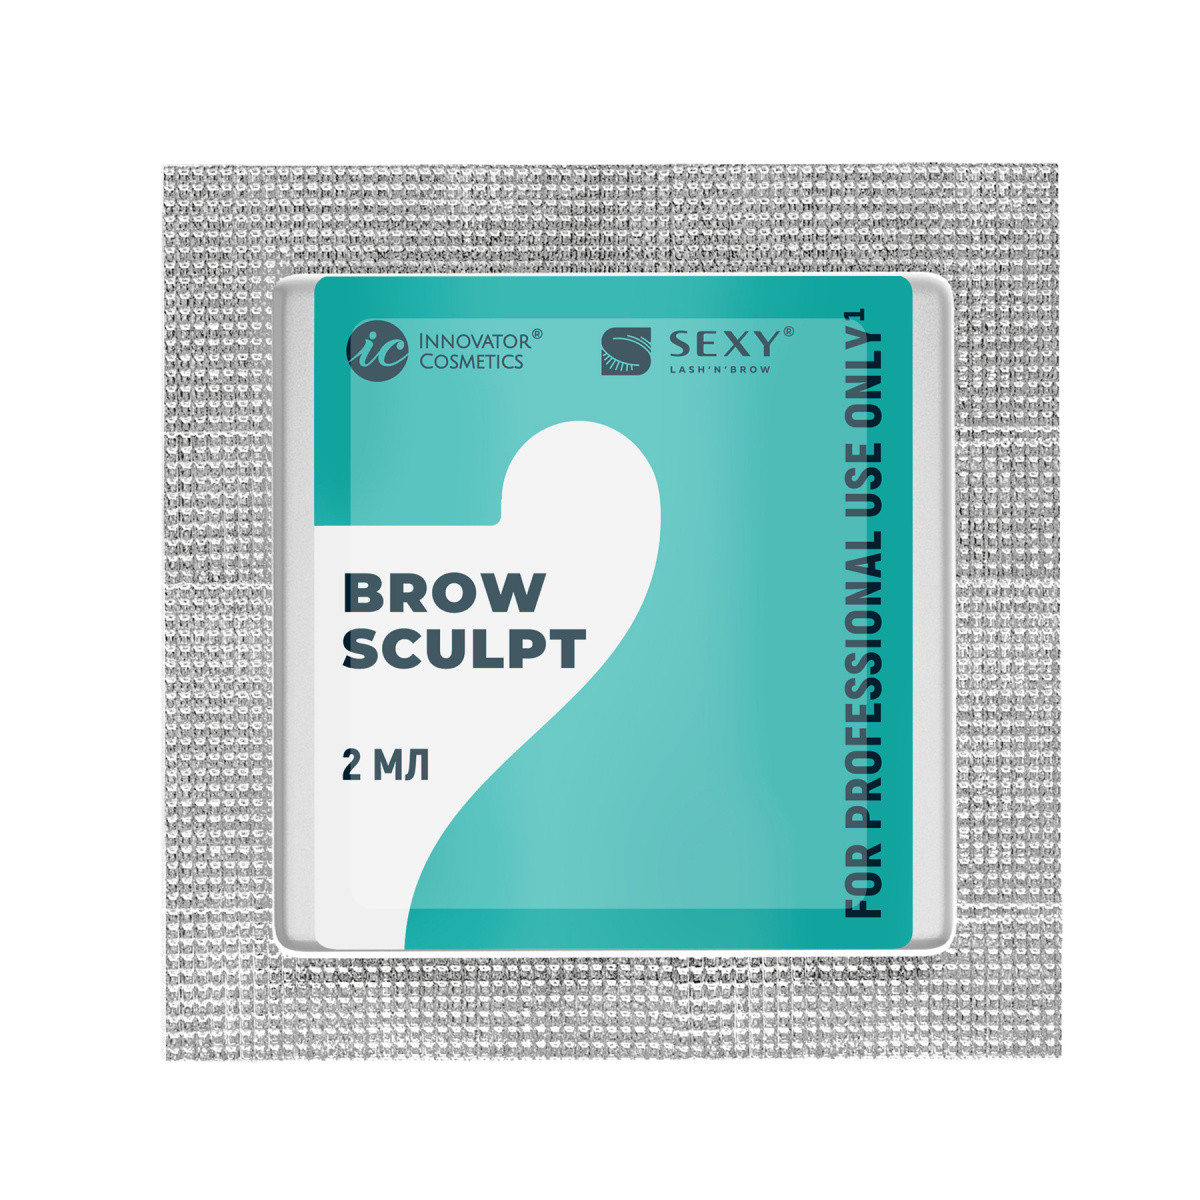 SEXY BROW PERM Саше с составом #2 для долговременной укладки бровей BROW SCULPT, 2мл